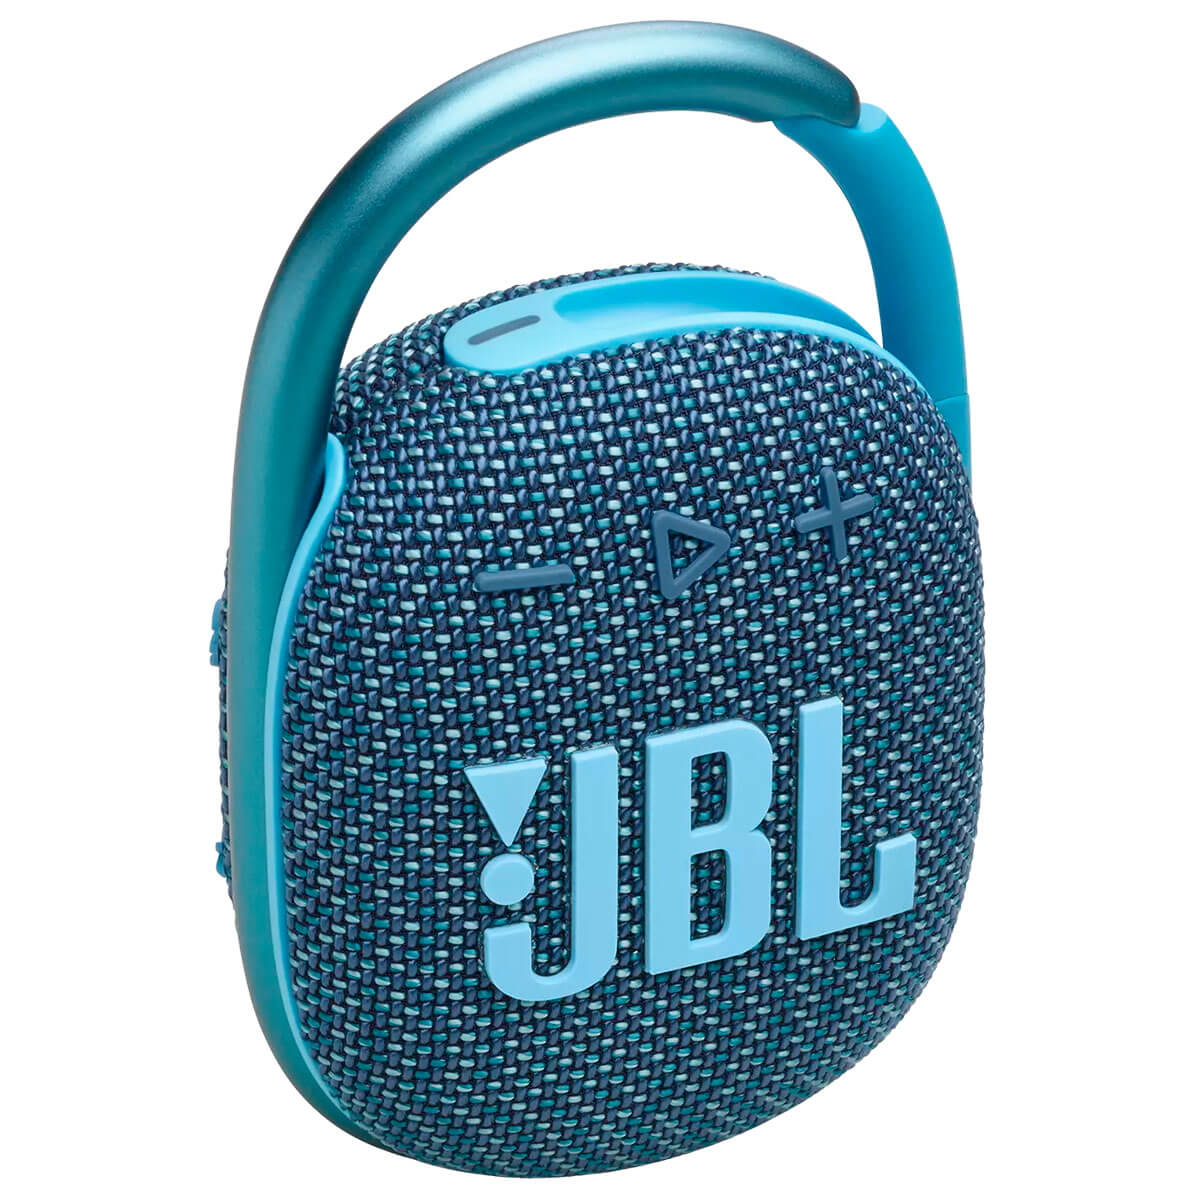 Портативная акустика JBL Clip 4 Eco Blue (JBLCLIP4ECOBLU)